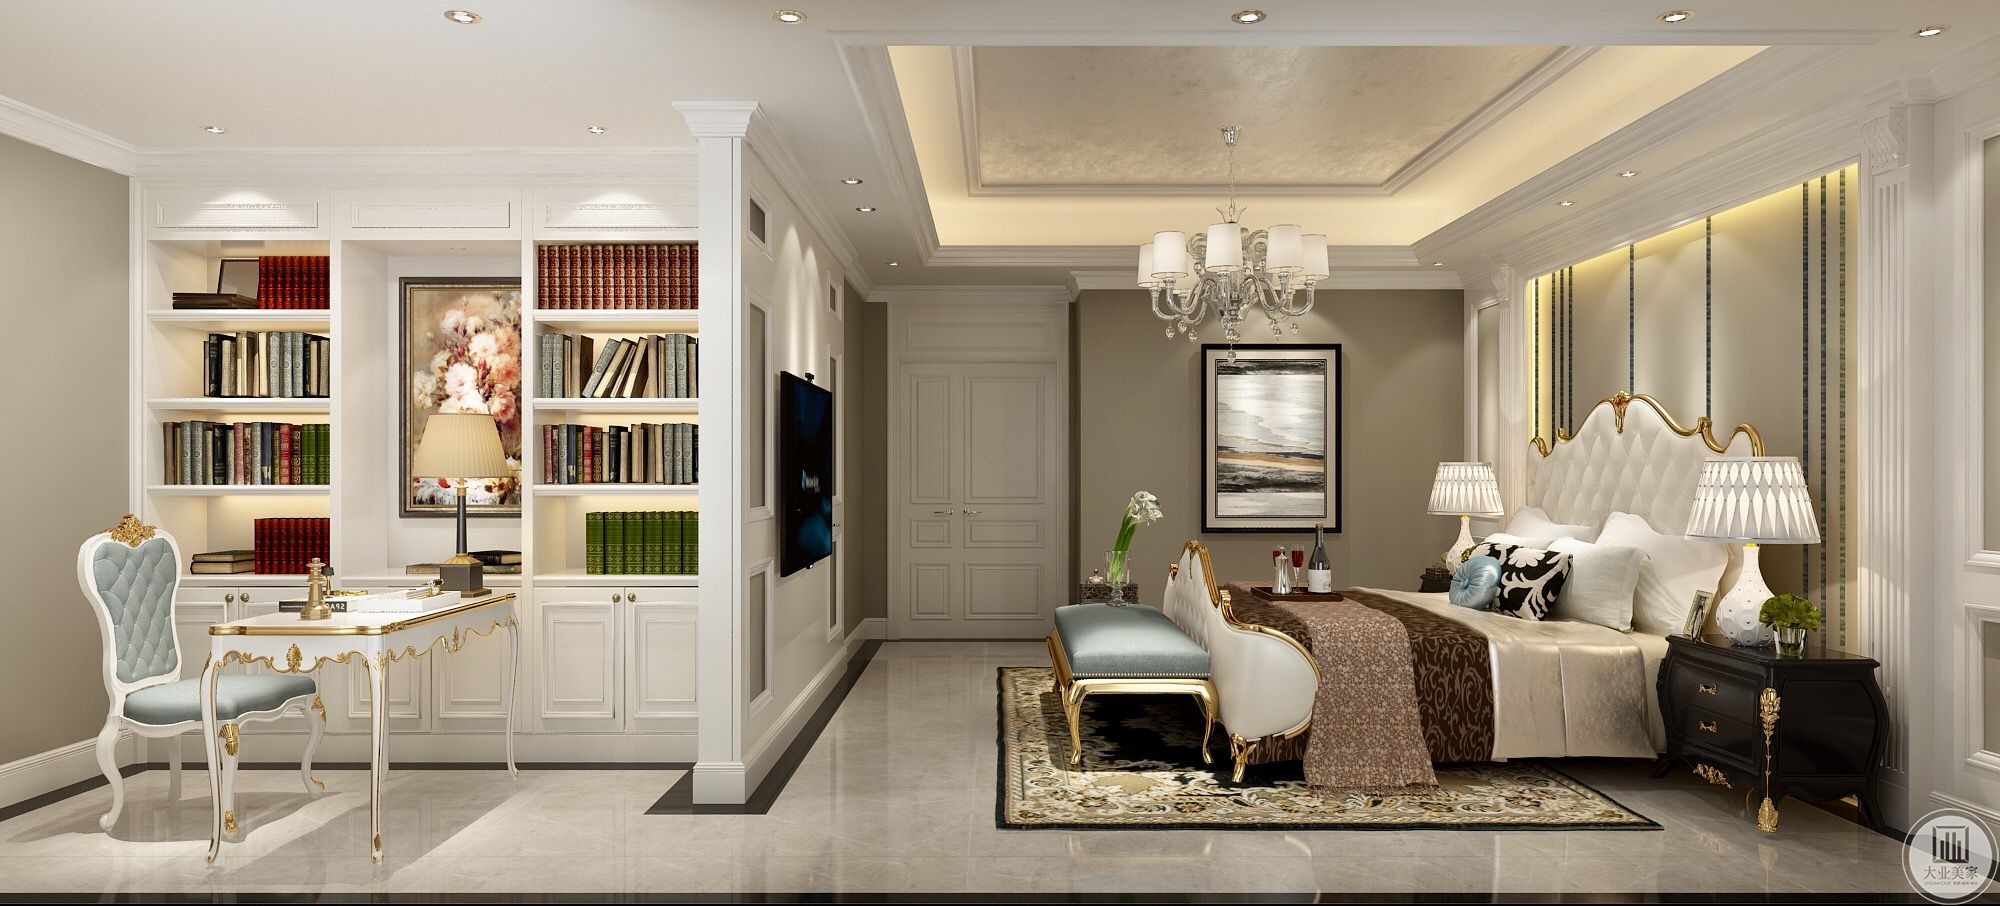 卧室整体效果 主卧是套间的设计,开放式的书房与卧室结合,非常舒适的